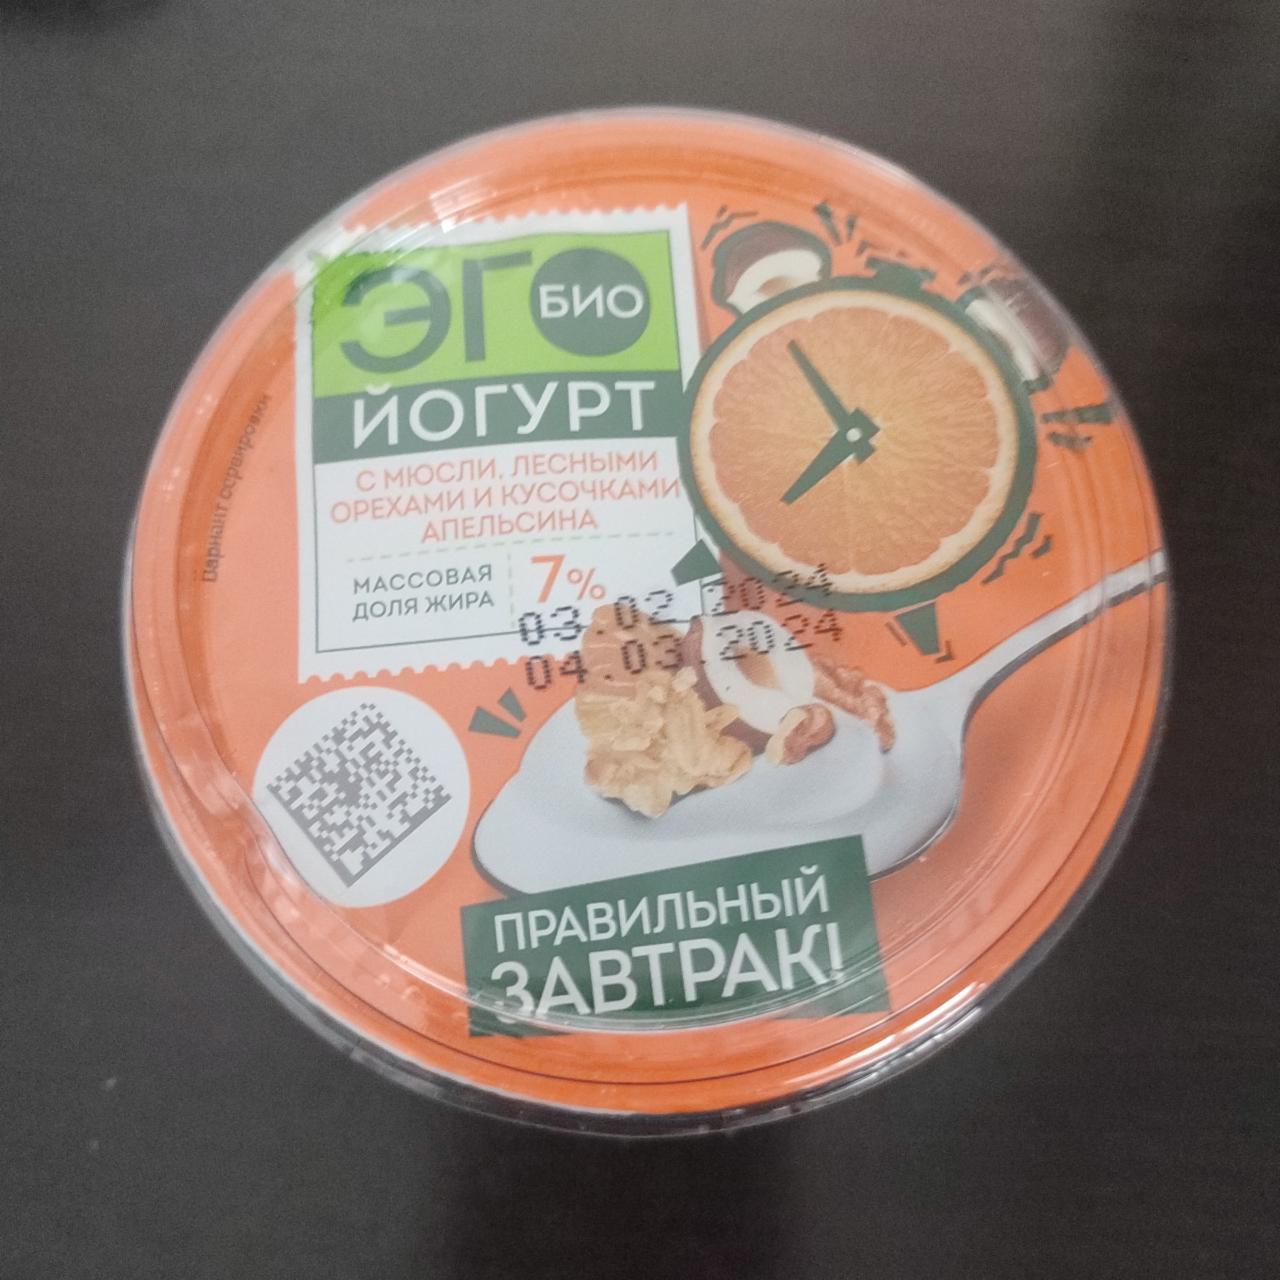 Фото - Био йогурт с мюсли, лесными орехами и кусочками апельсина Эго